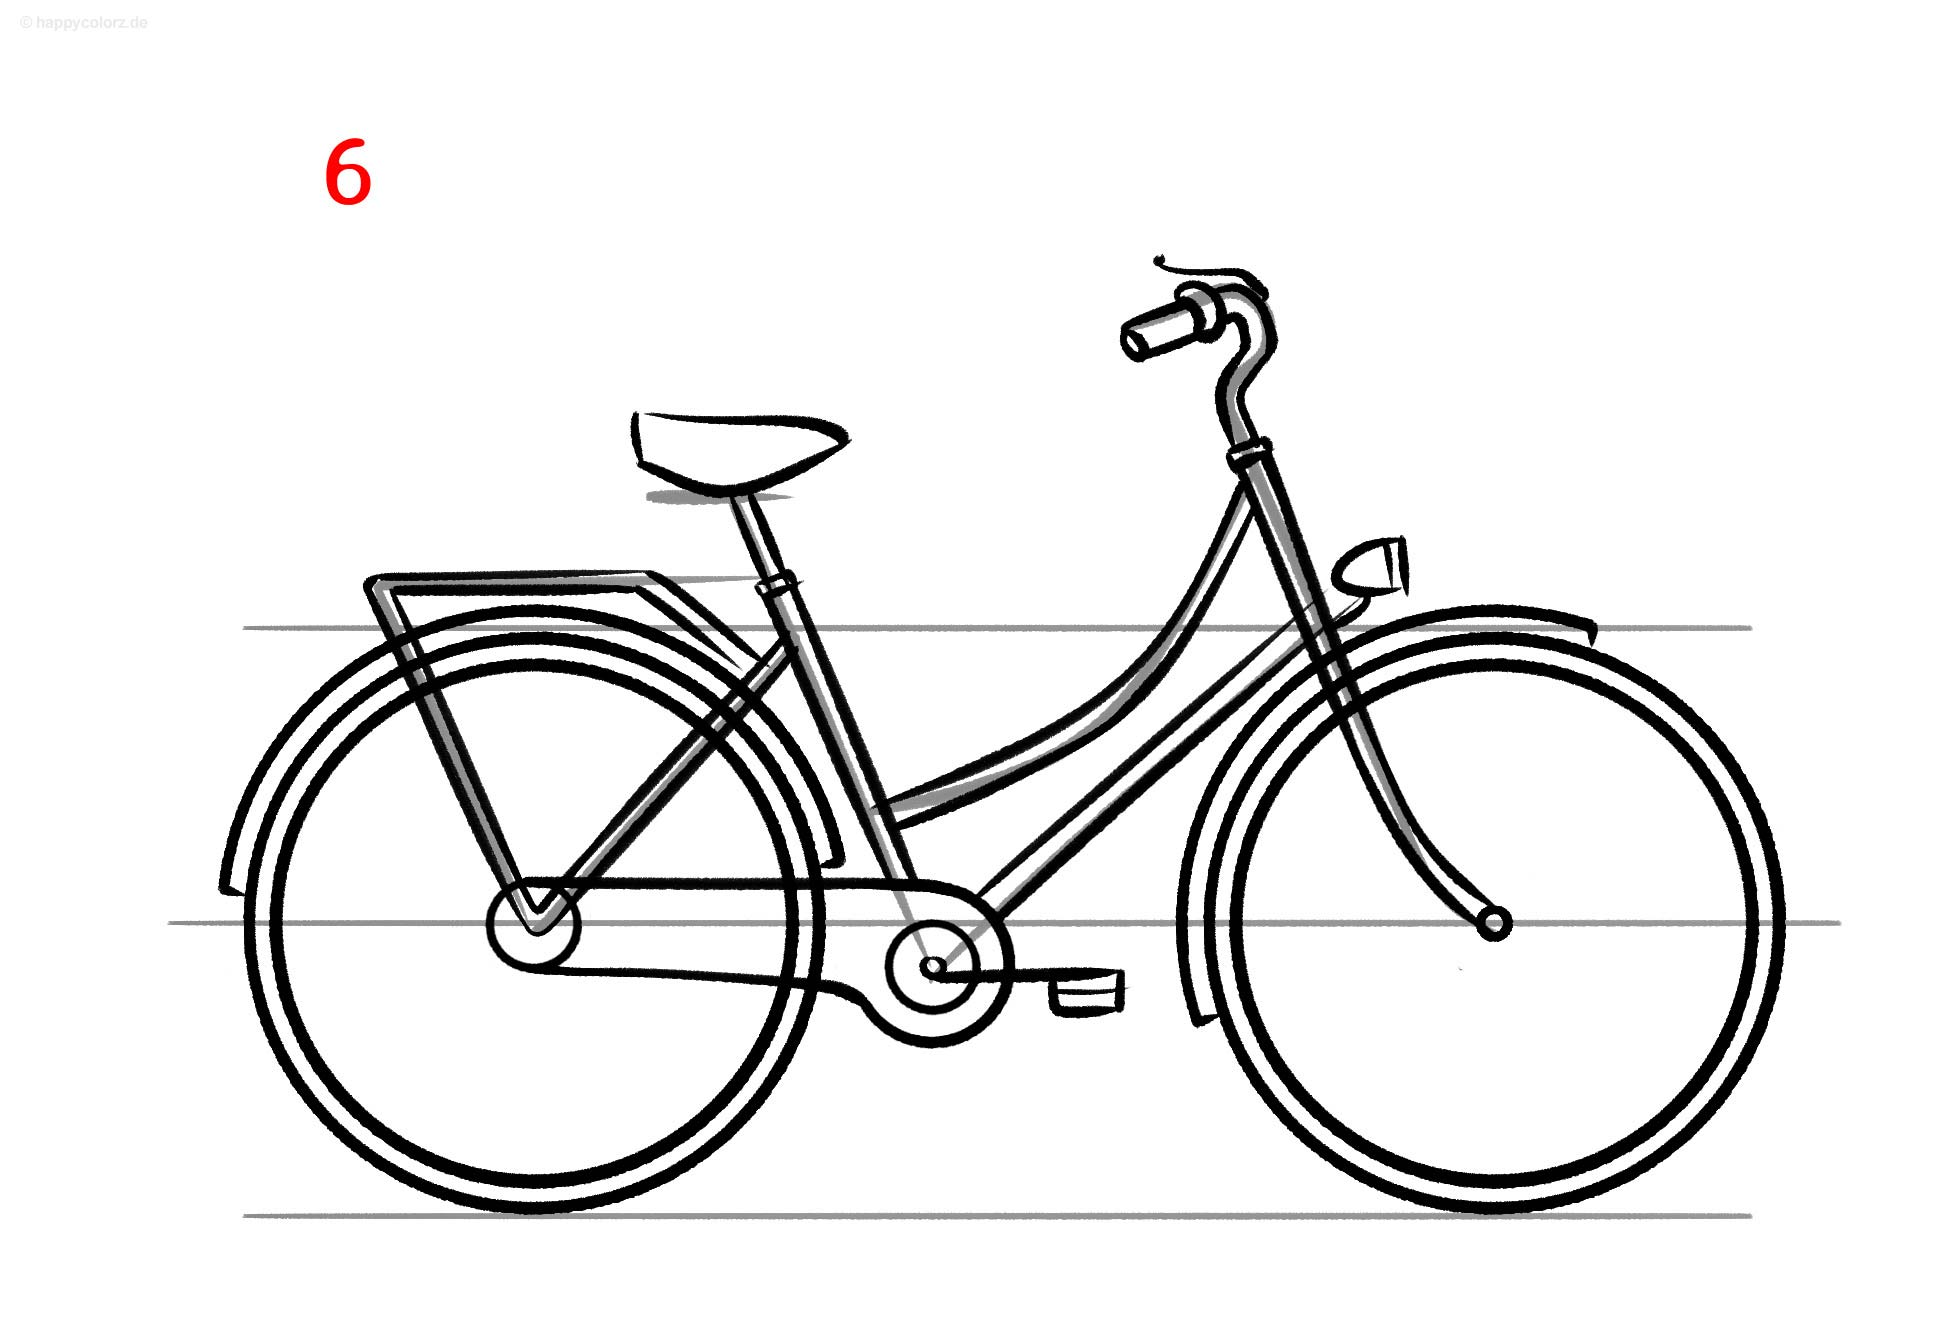 Fahrrad zeichnen - Schritt für Schritt